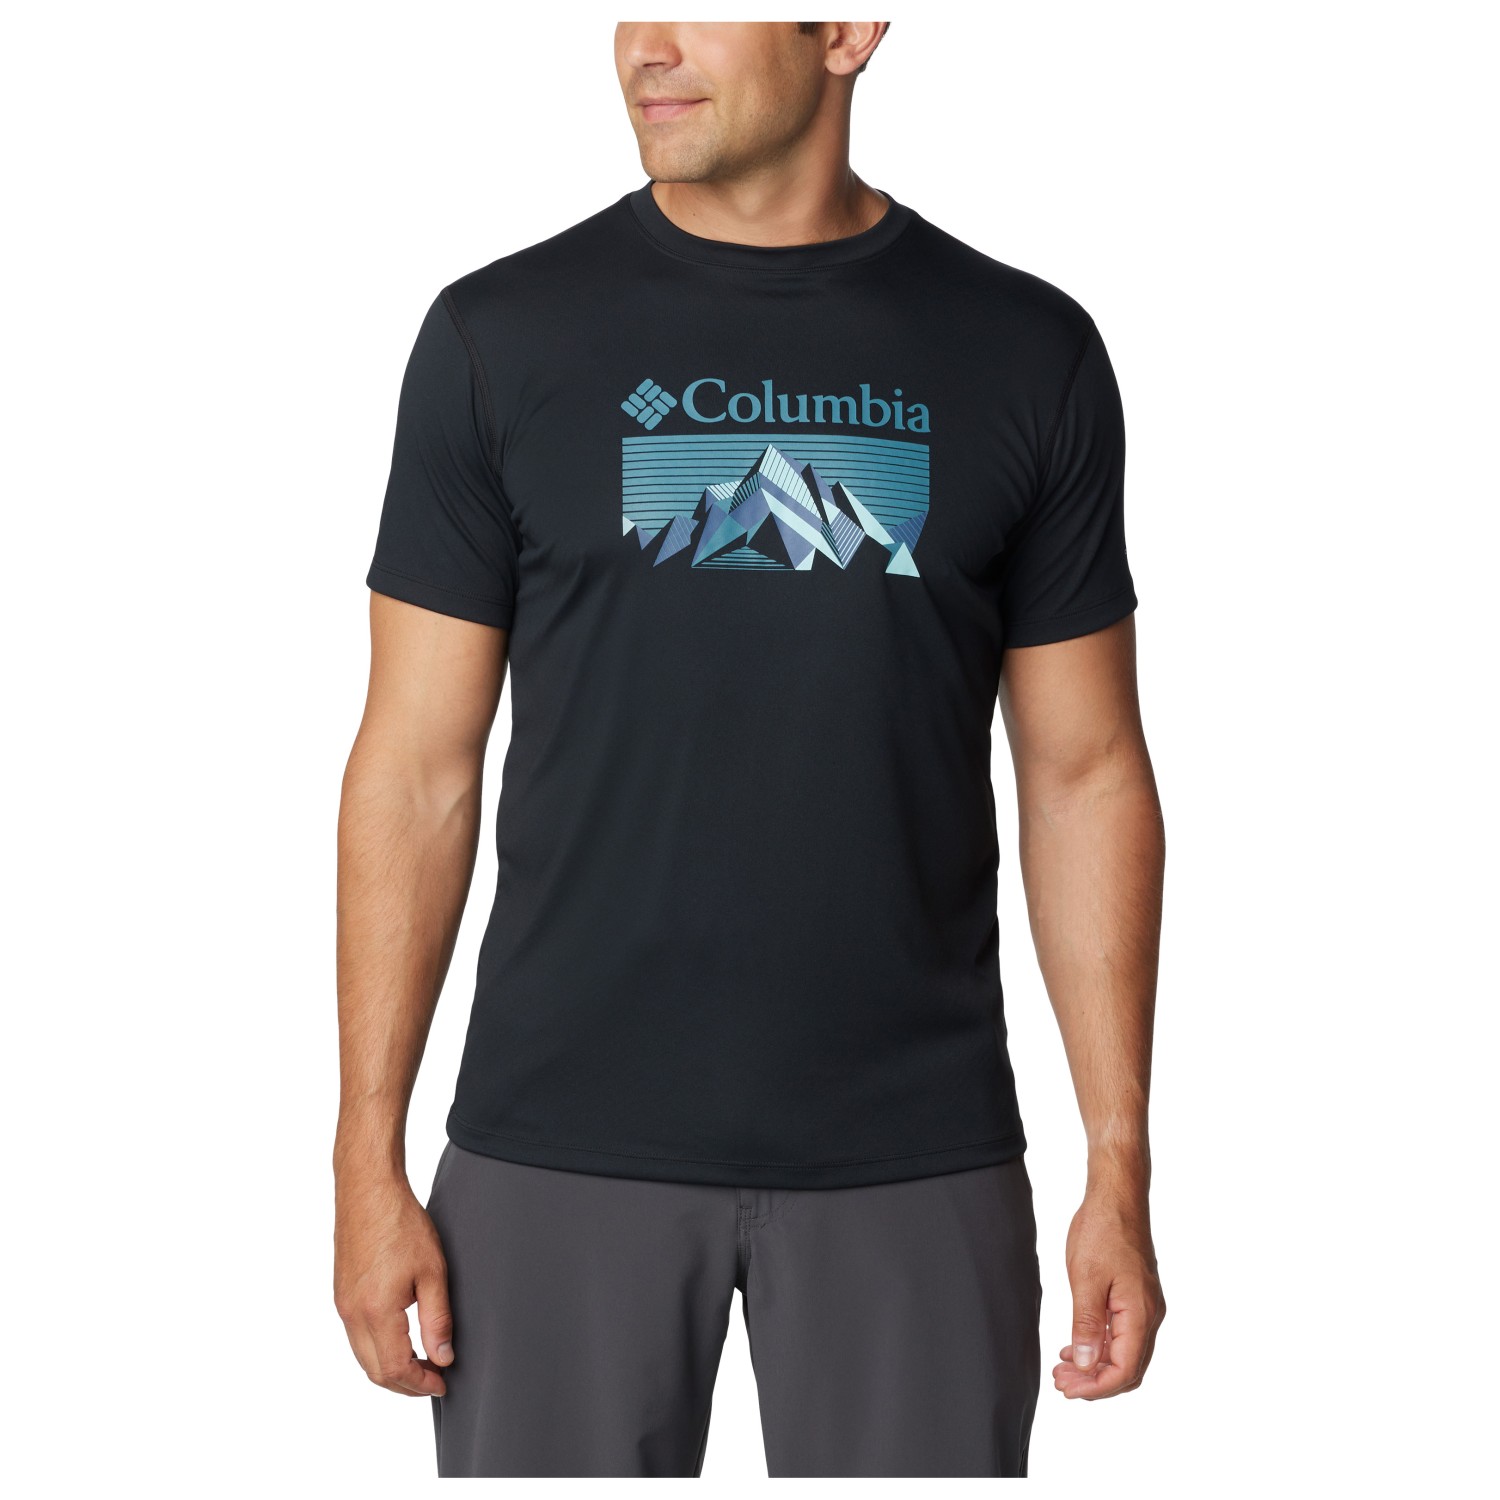 Функциональная рубашка Columbia Zero Rules Graphic Shirt S/S, цвет Black/Fractal Peaks